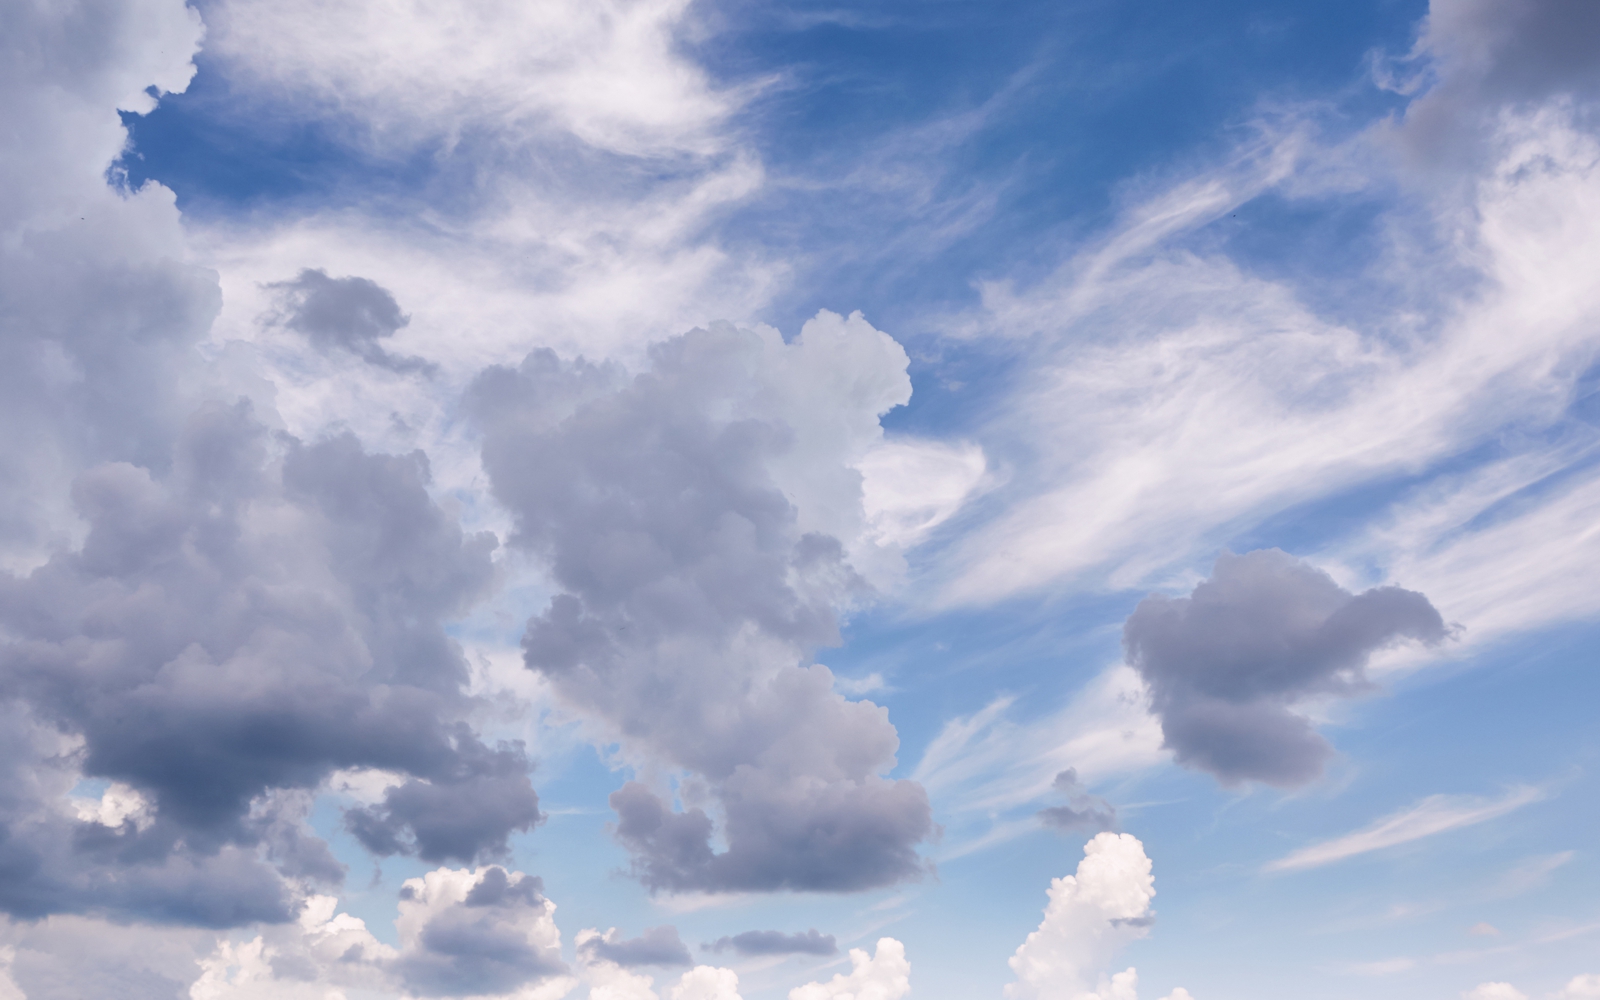 photo "Inception" tags: landscape, nature, clouds, sky, storm cloud, воздух, день, облако, синий